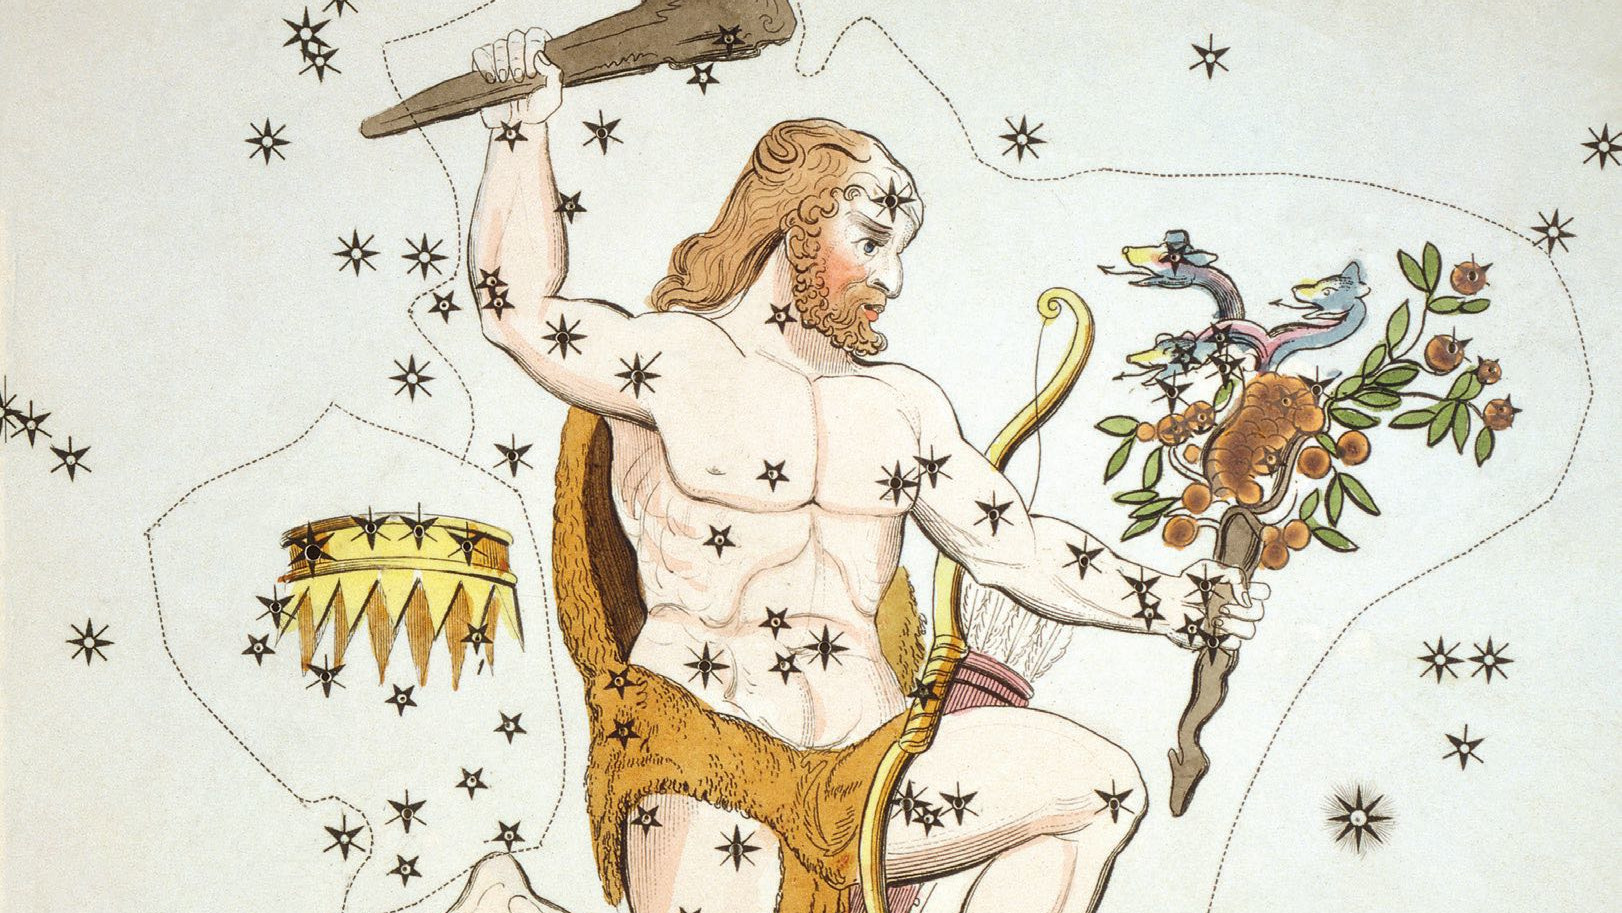 Em ilustrações históricas, a representação completa de Hércules inclui o bastão na mão, a pele do leão e as maçãs douradas roubadas. 
den gestohlenen goldenen Äpfeln dargestellt. 